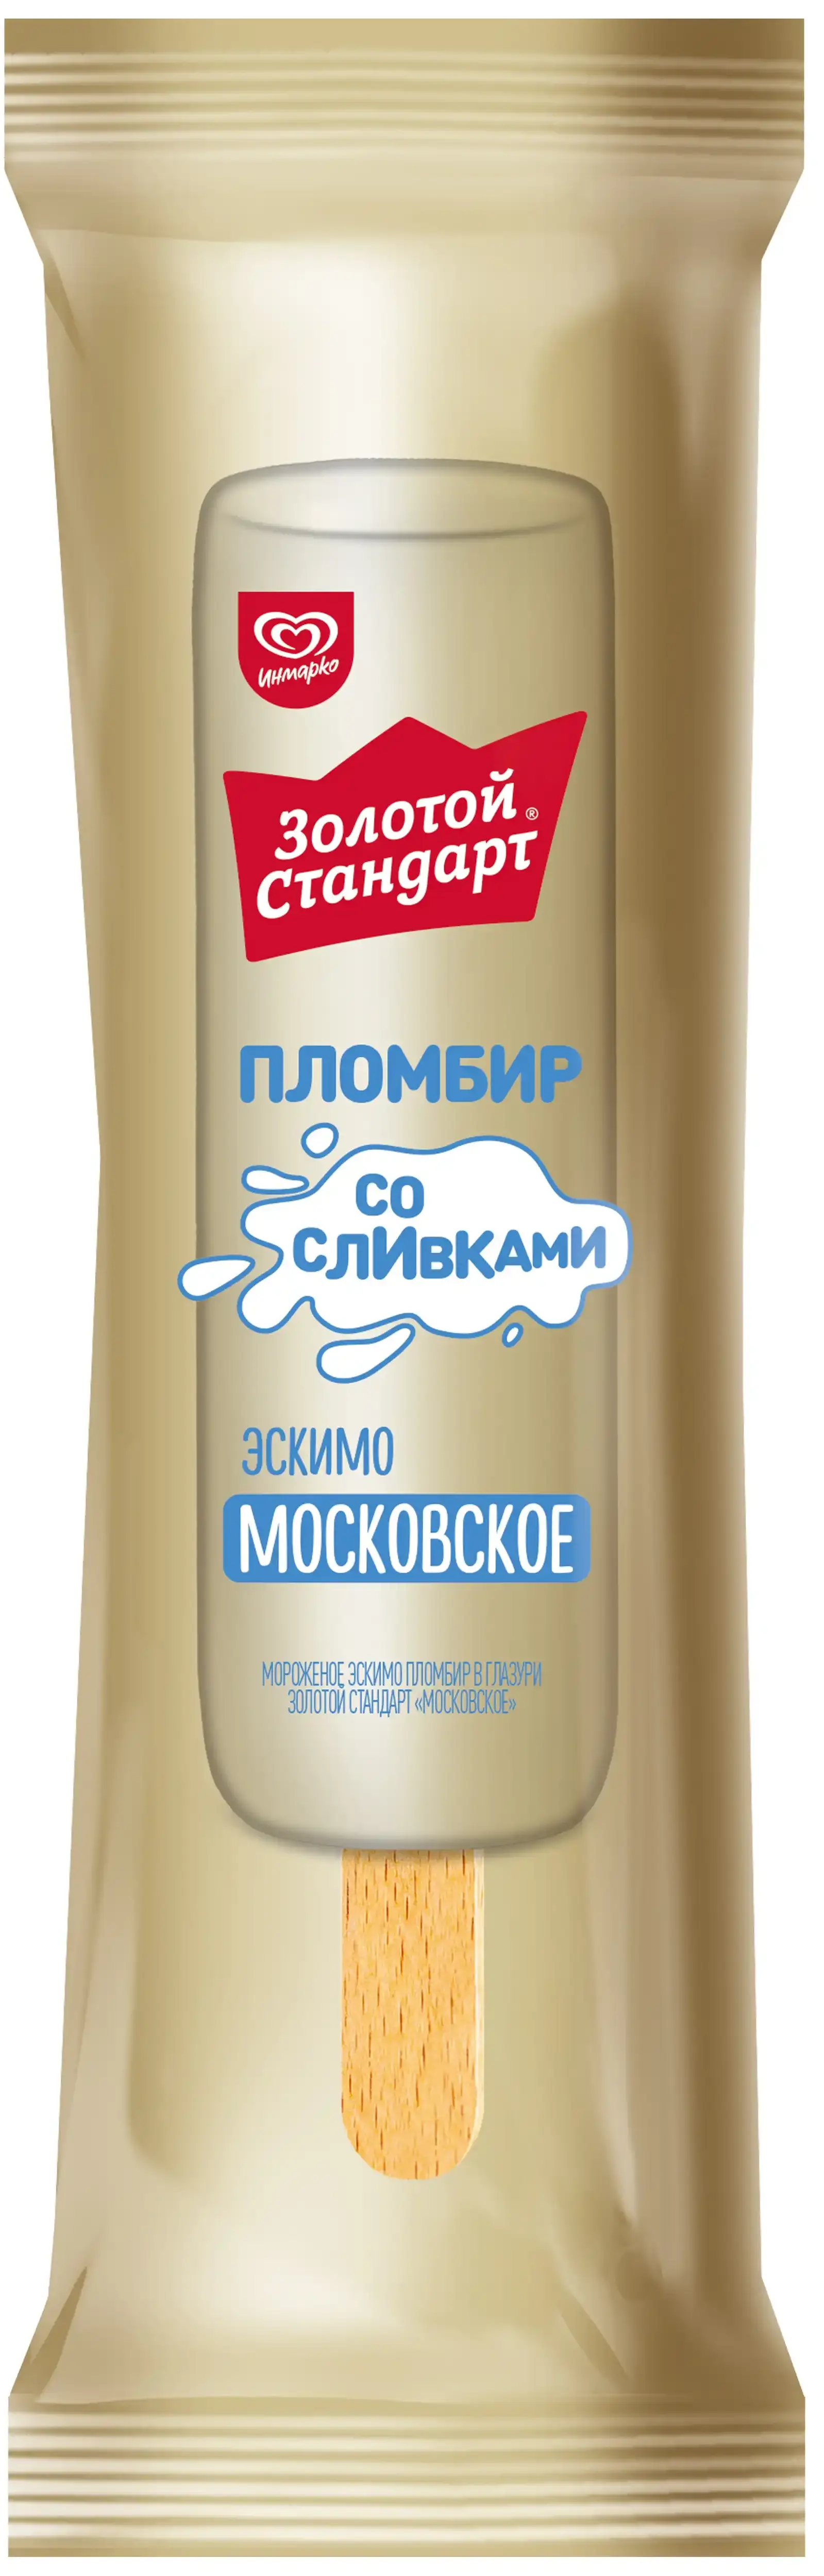 Мороженое Золотой Стандарт пломбир Московское эскимо 80г  бзмж